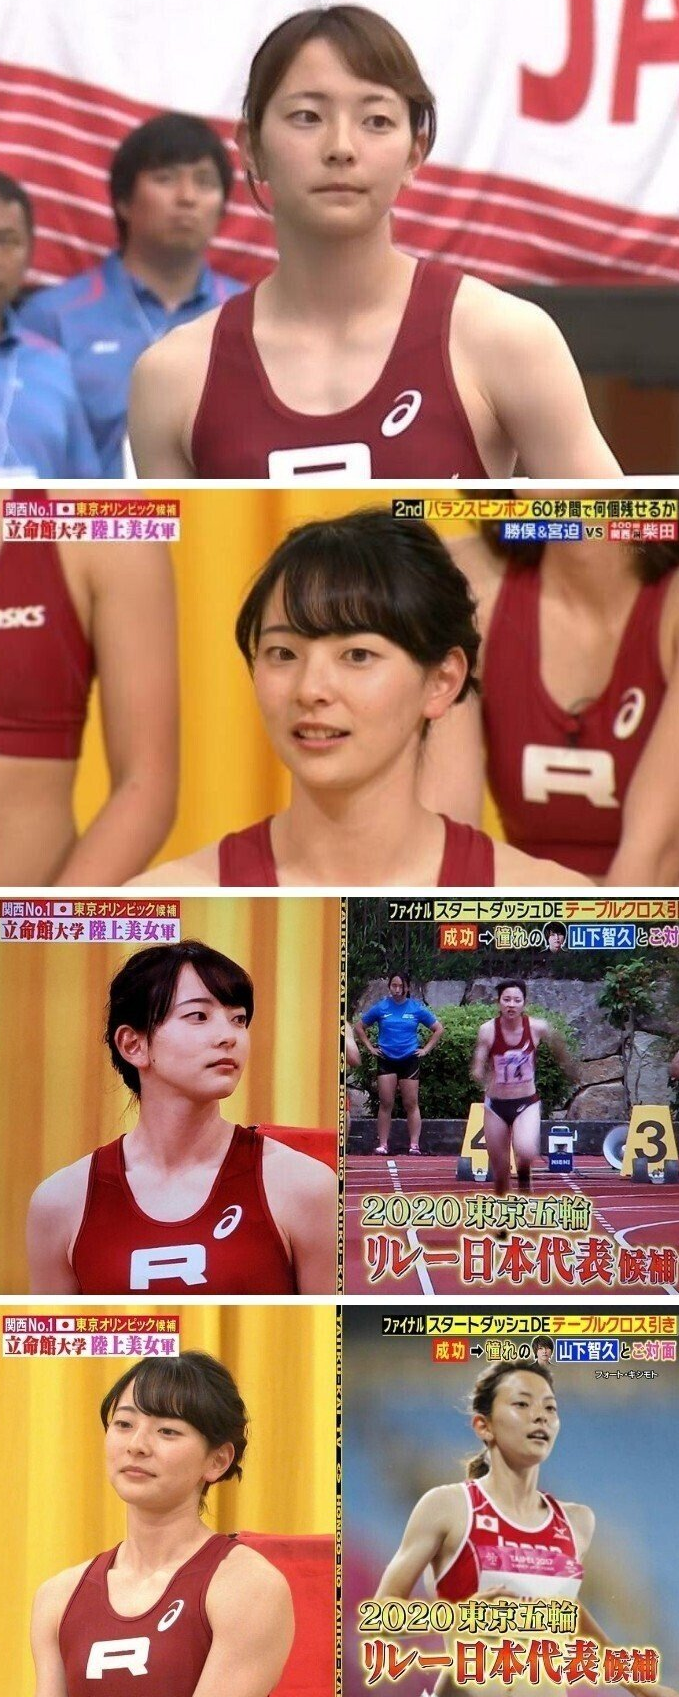 일본 여자 육상 국가대표 이키 이치코 이키 사진모음 01